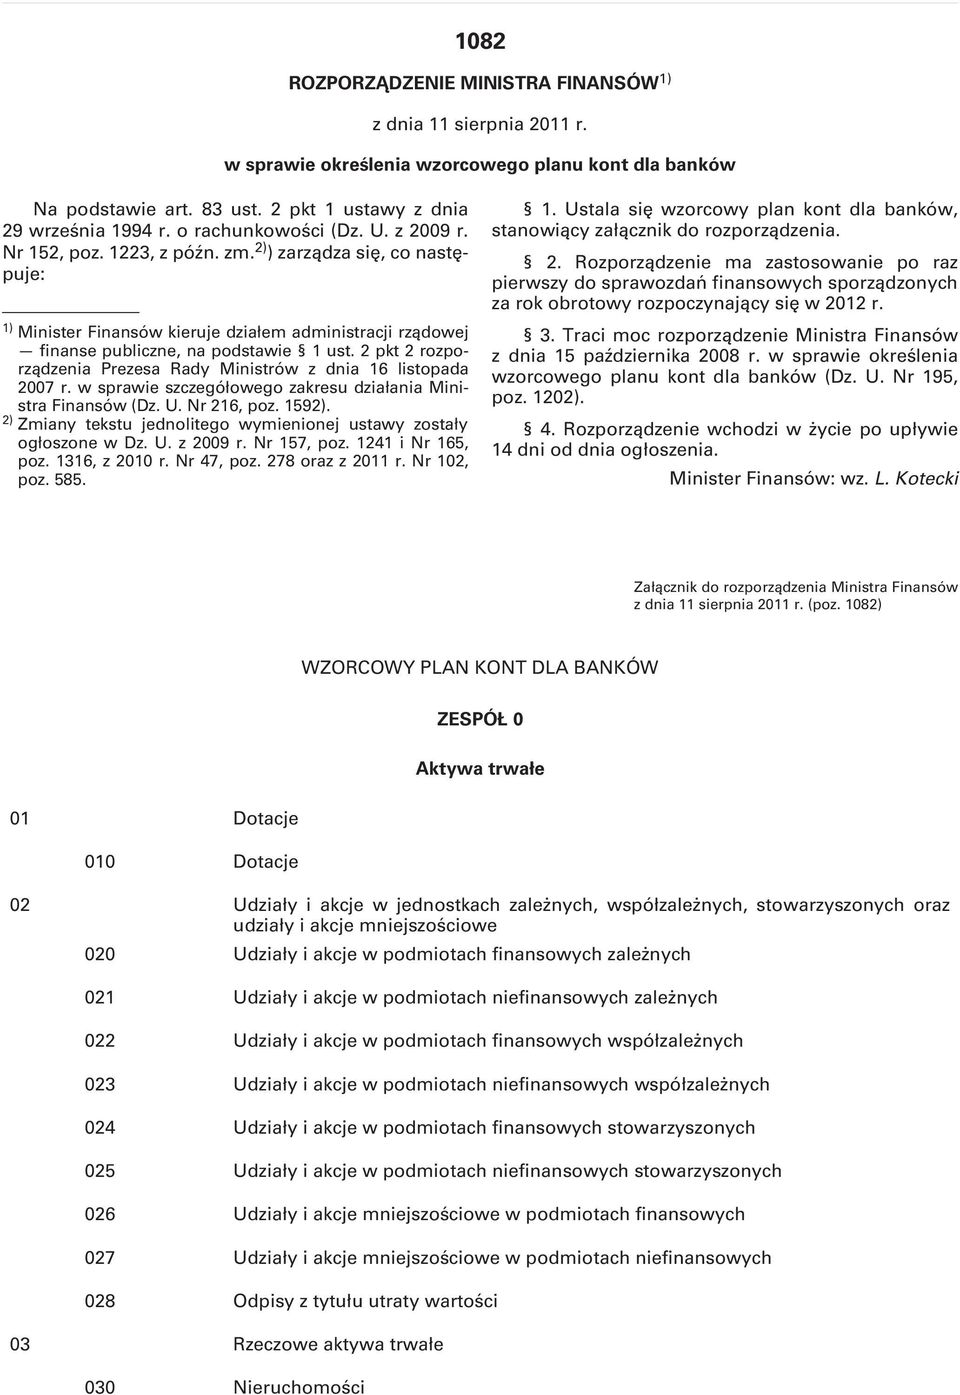 2 pkt 2 rozporządzenia Prezesa Rady Ministrów z dnia 16 listopada 2007 r. w sprawie szczegółowego zakresu działania Ministra Finansów (Dz. U. Nr 216, poz. 1592).